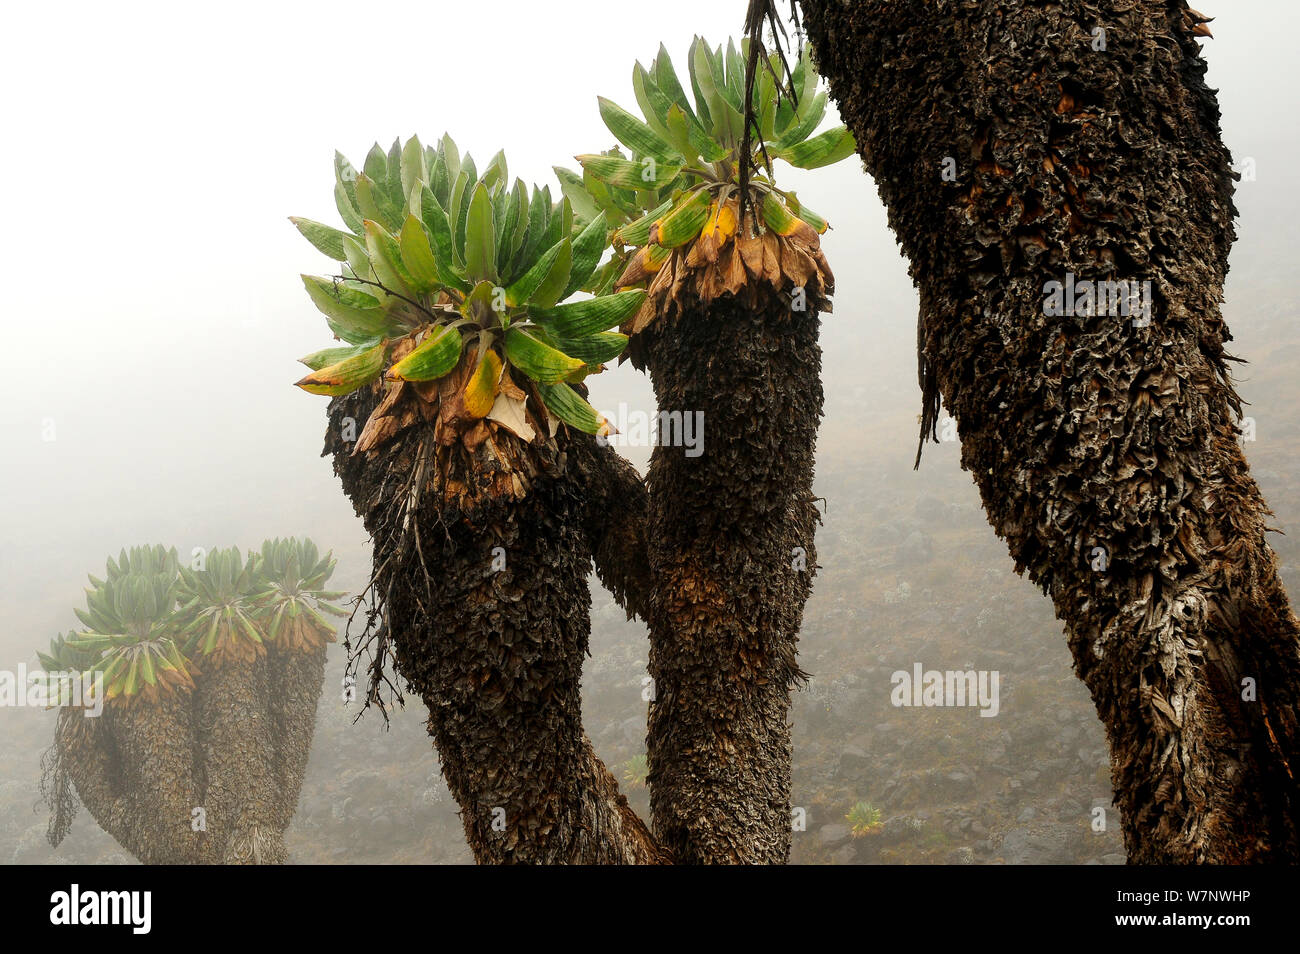 Giant groundsel (Dendrosenecio kilimanjari) plants, endemic to the higher altitude zones of Kilimanjaro in subalpine forests, Mount Kilimanjaro, Tanzania Stock Photo